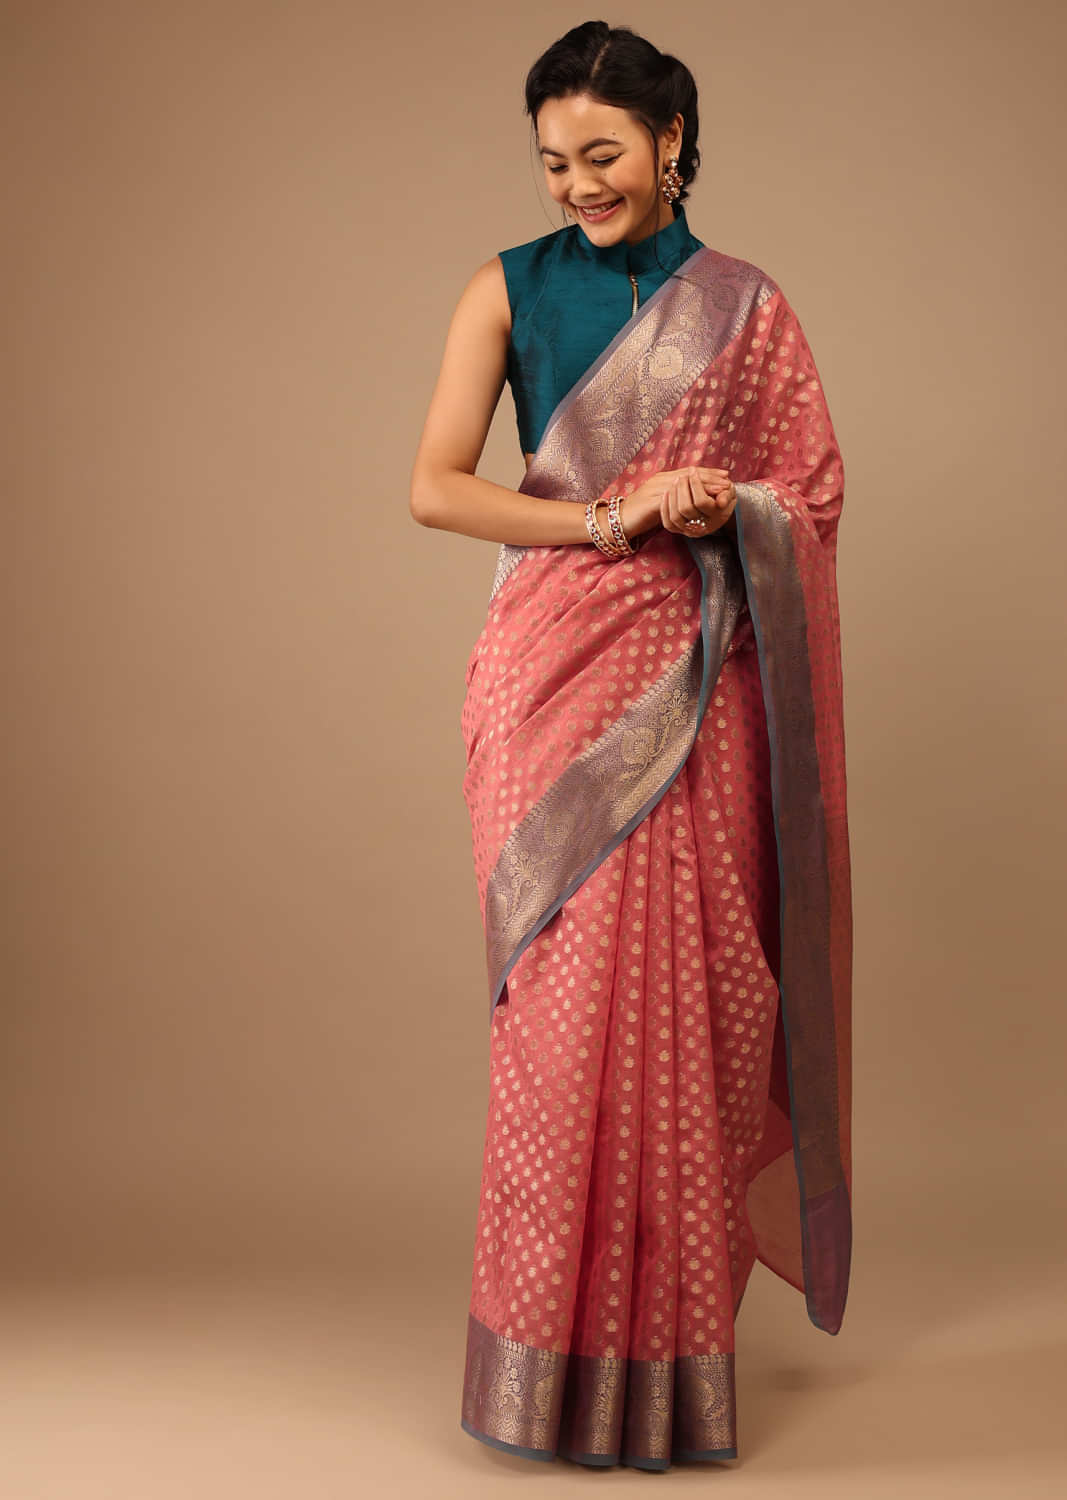 Confetti Pink Saree In Banarsi Chanderi & Pure Handloom Cotton